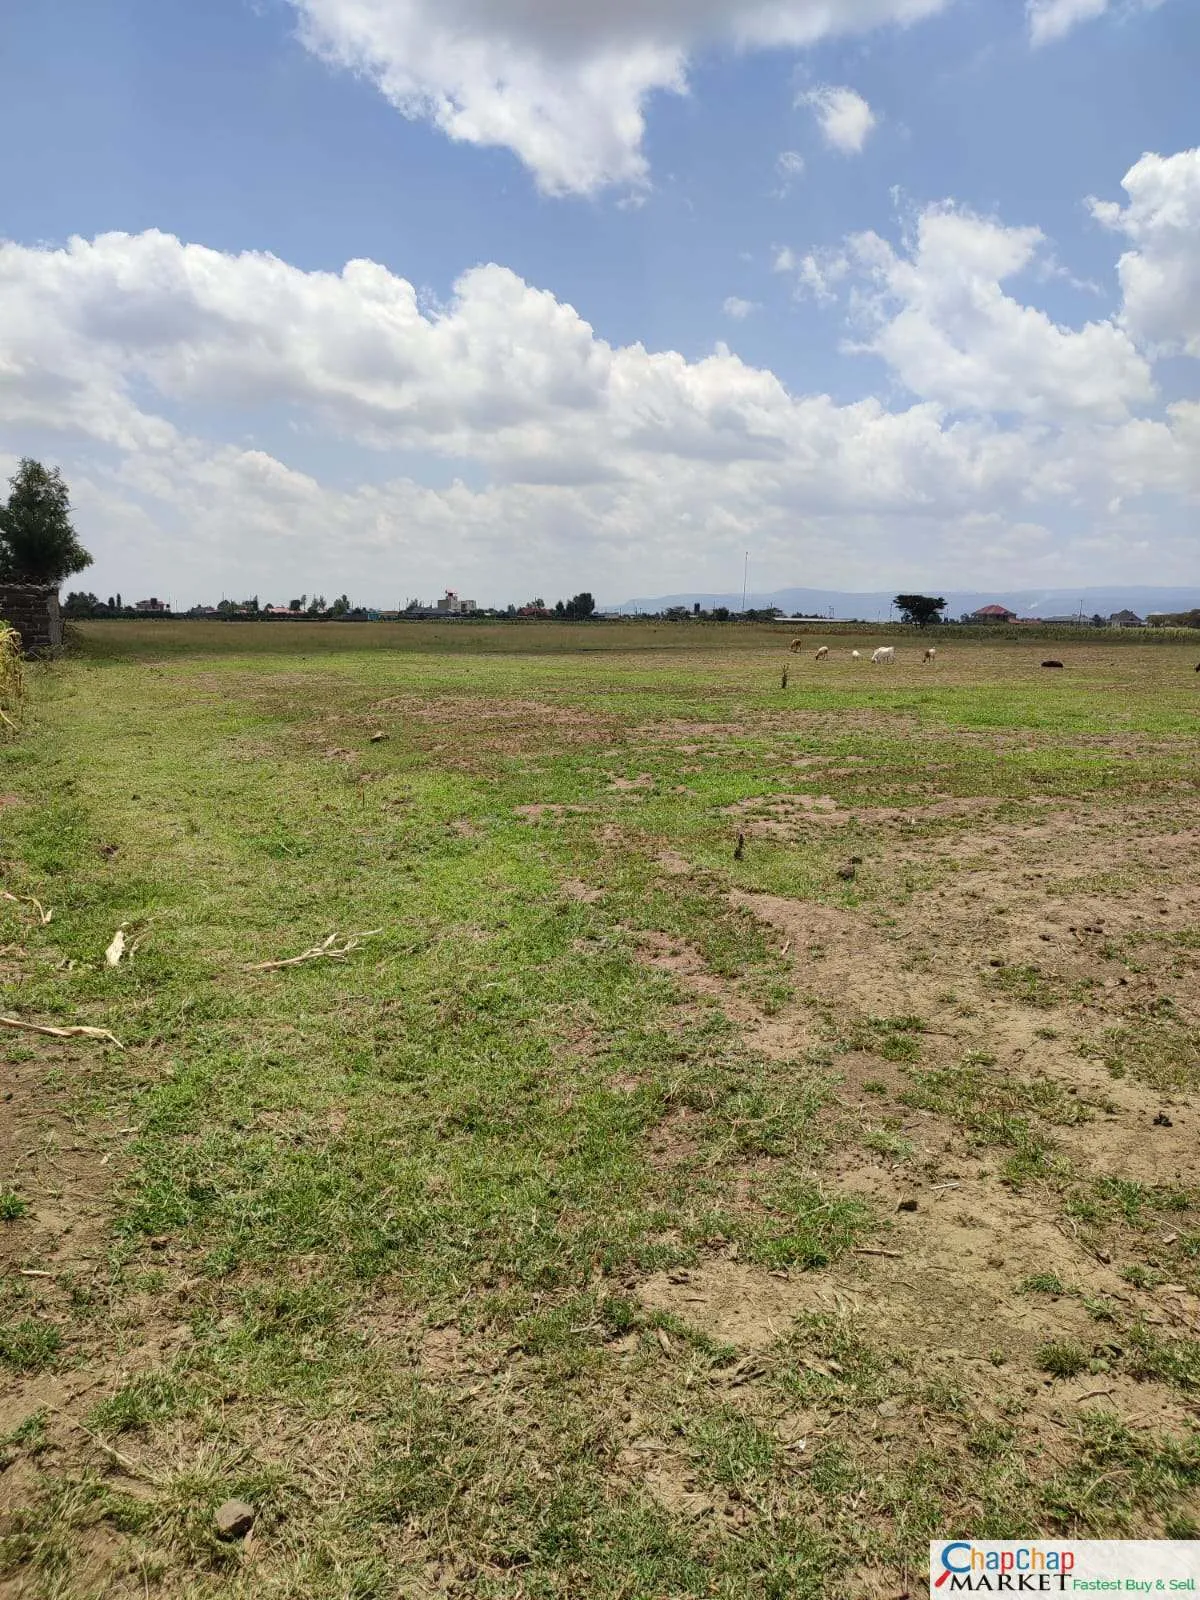 Land for Sale in Nakuru Near Airport 2 Acres Mbaruk Clean Title Deed EXCLUSIVE Nakuru mbaruk PLOT